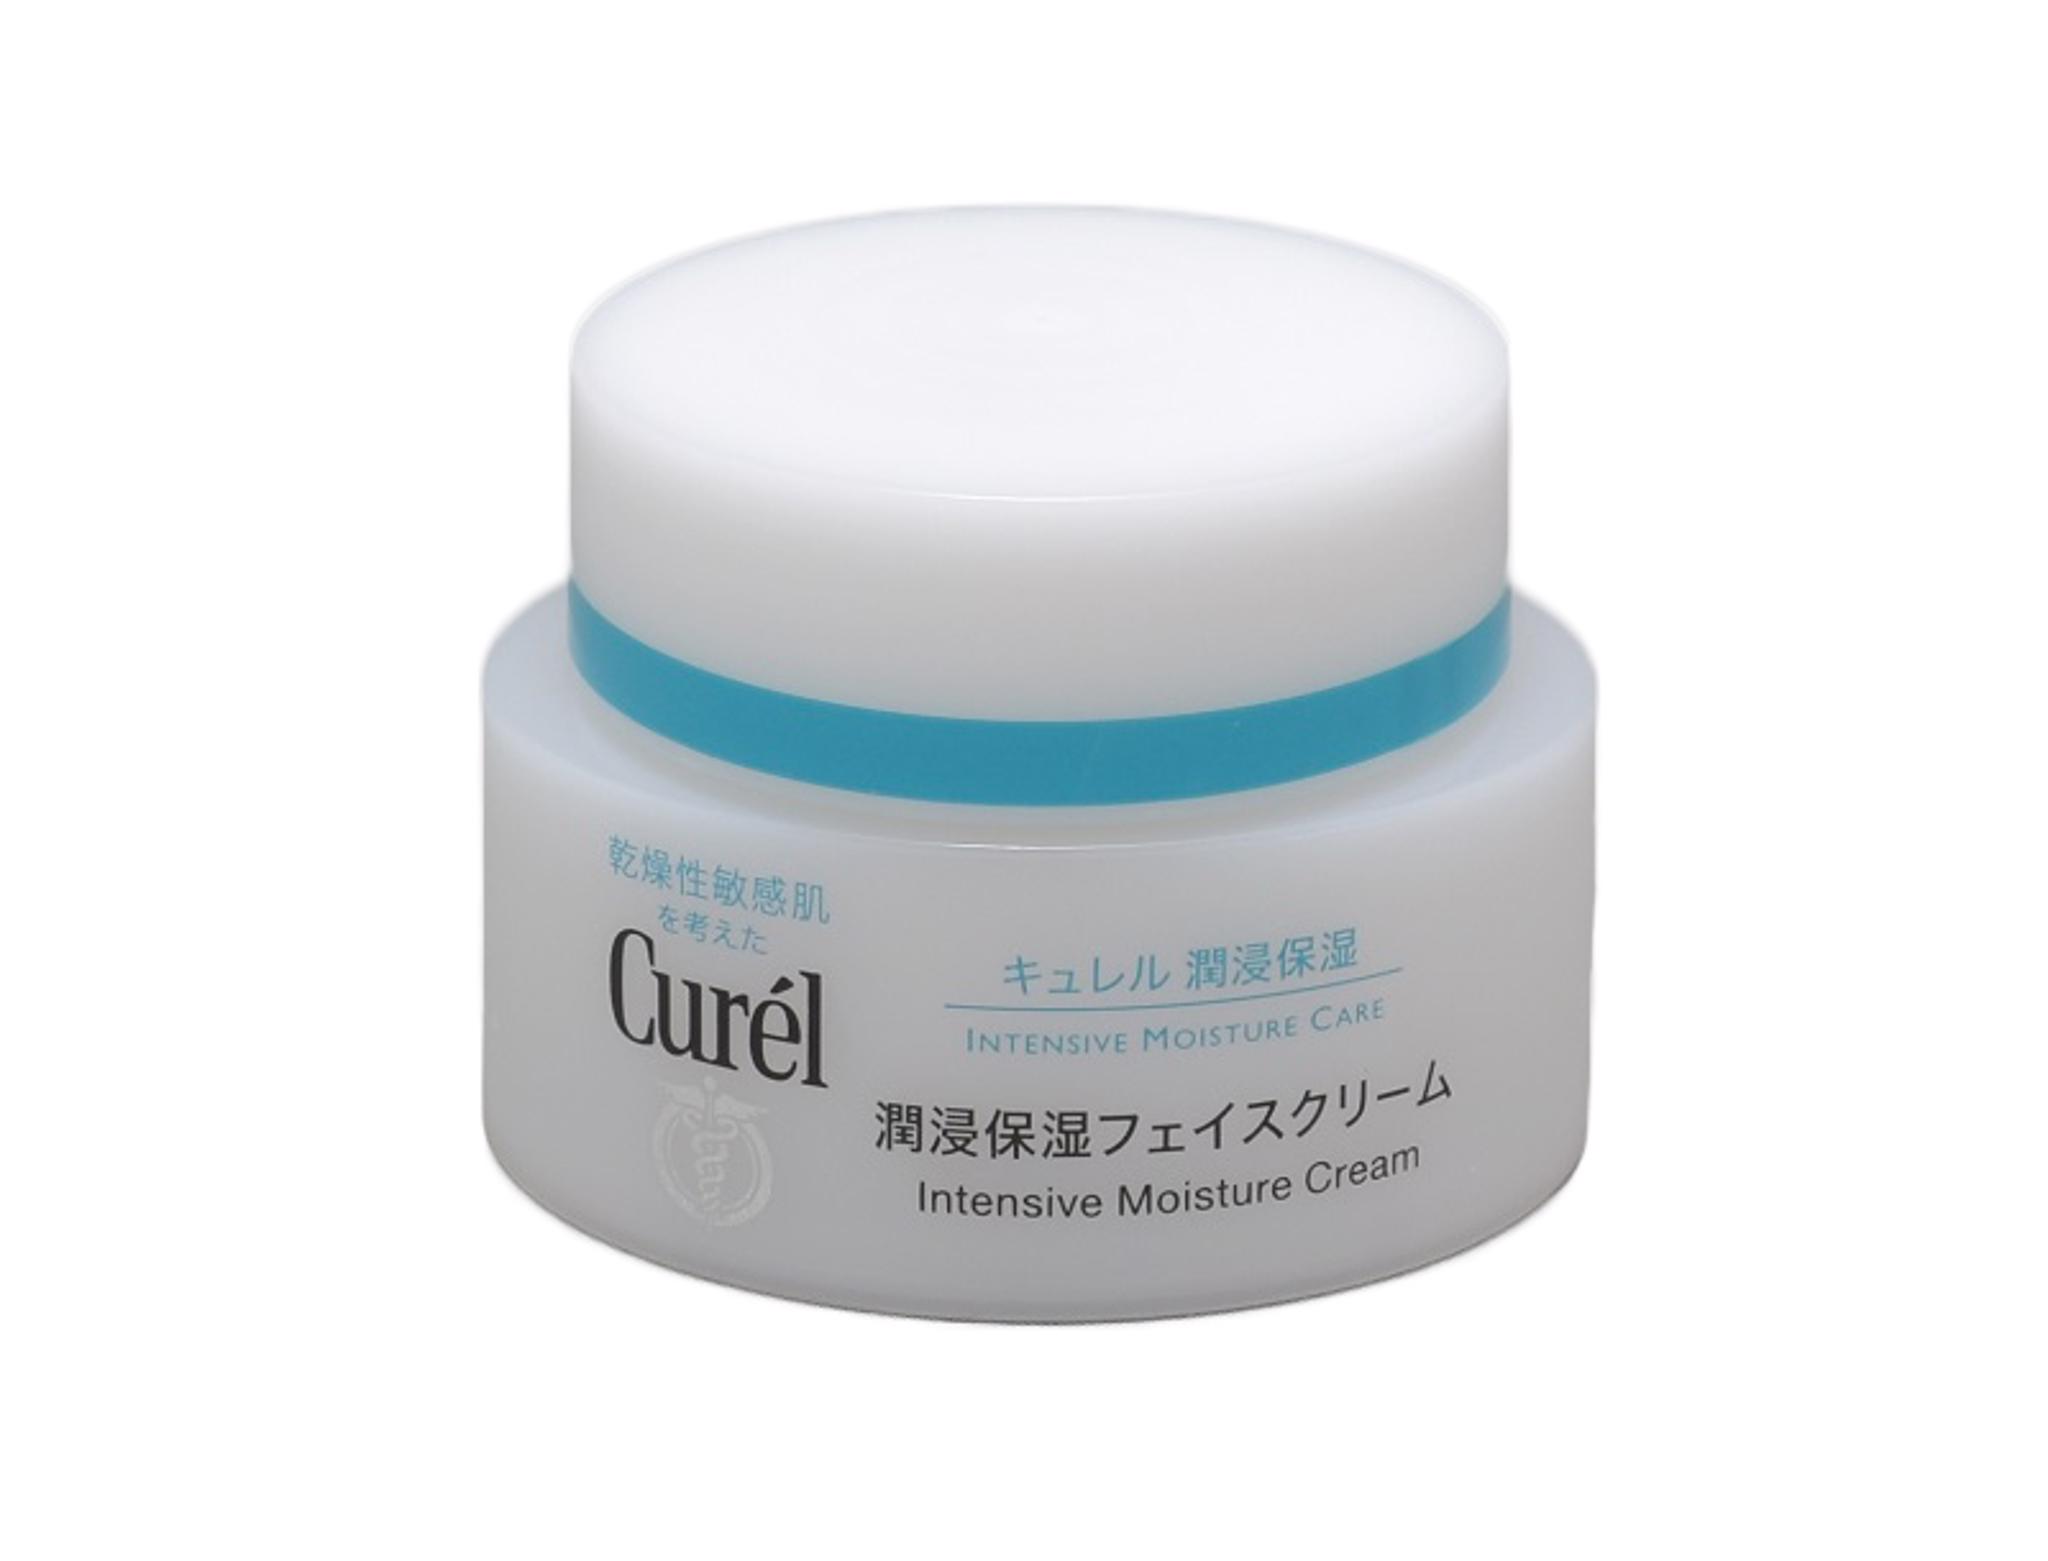 Curél - Intensive Moisture Cream  1342